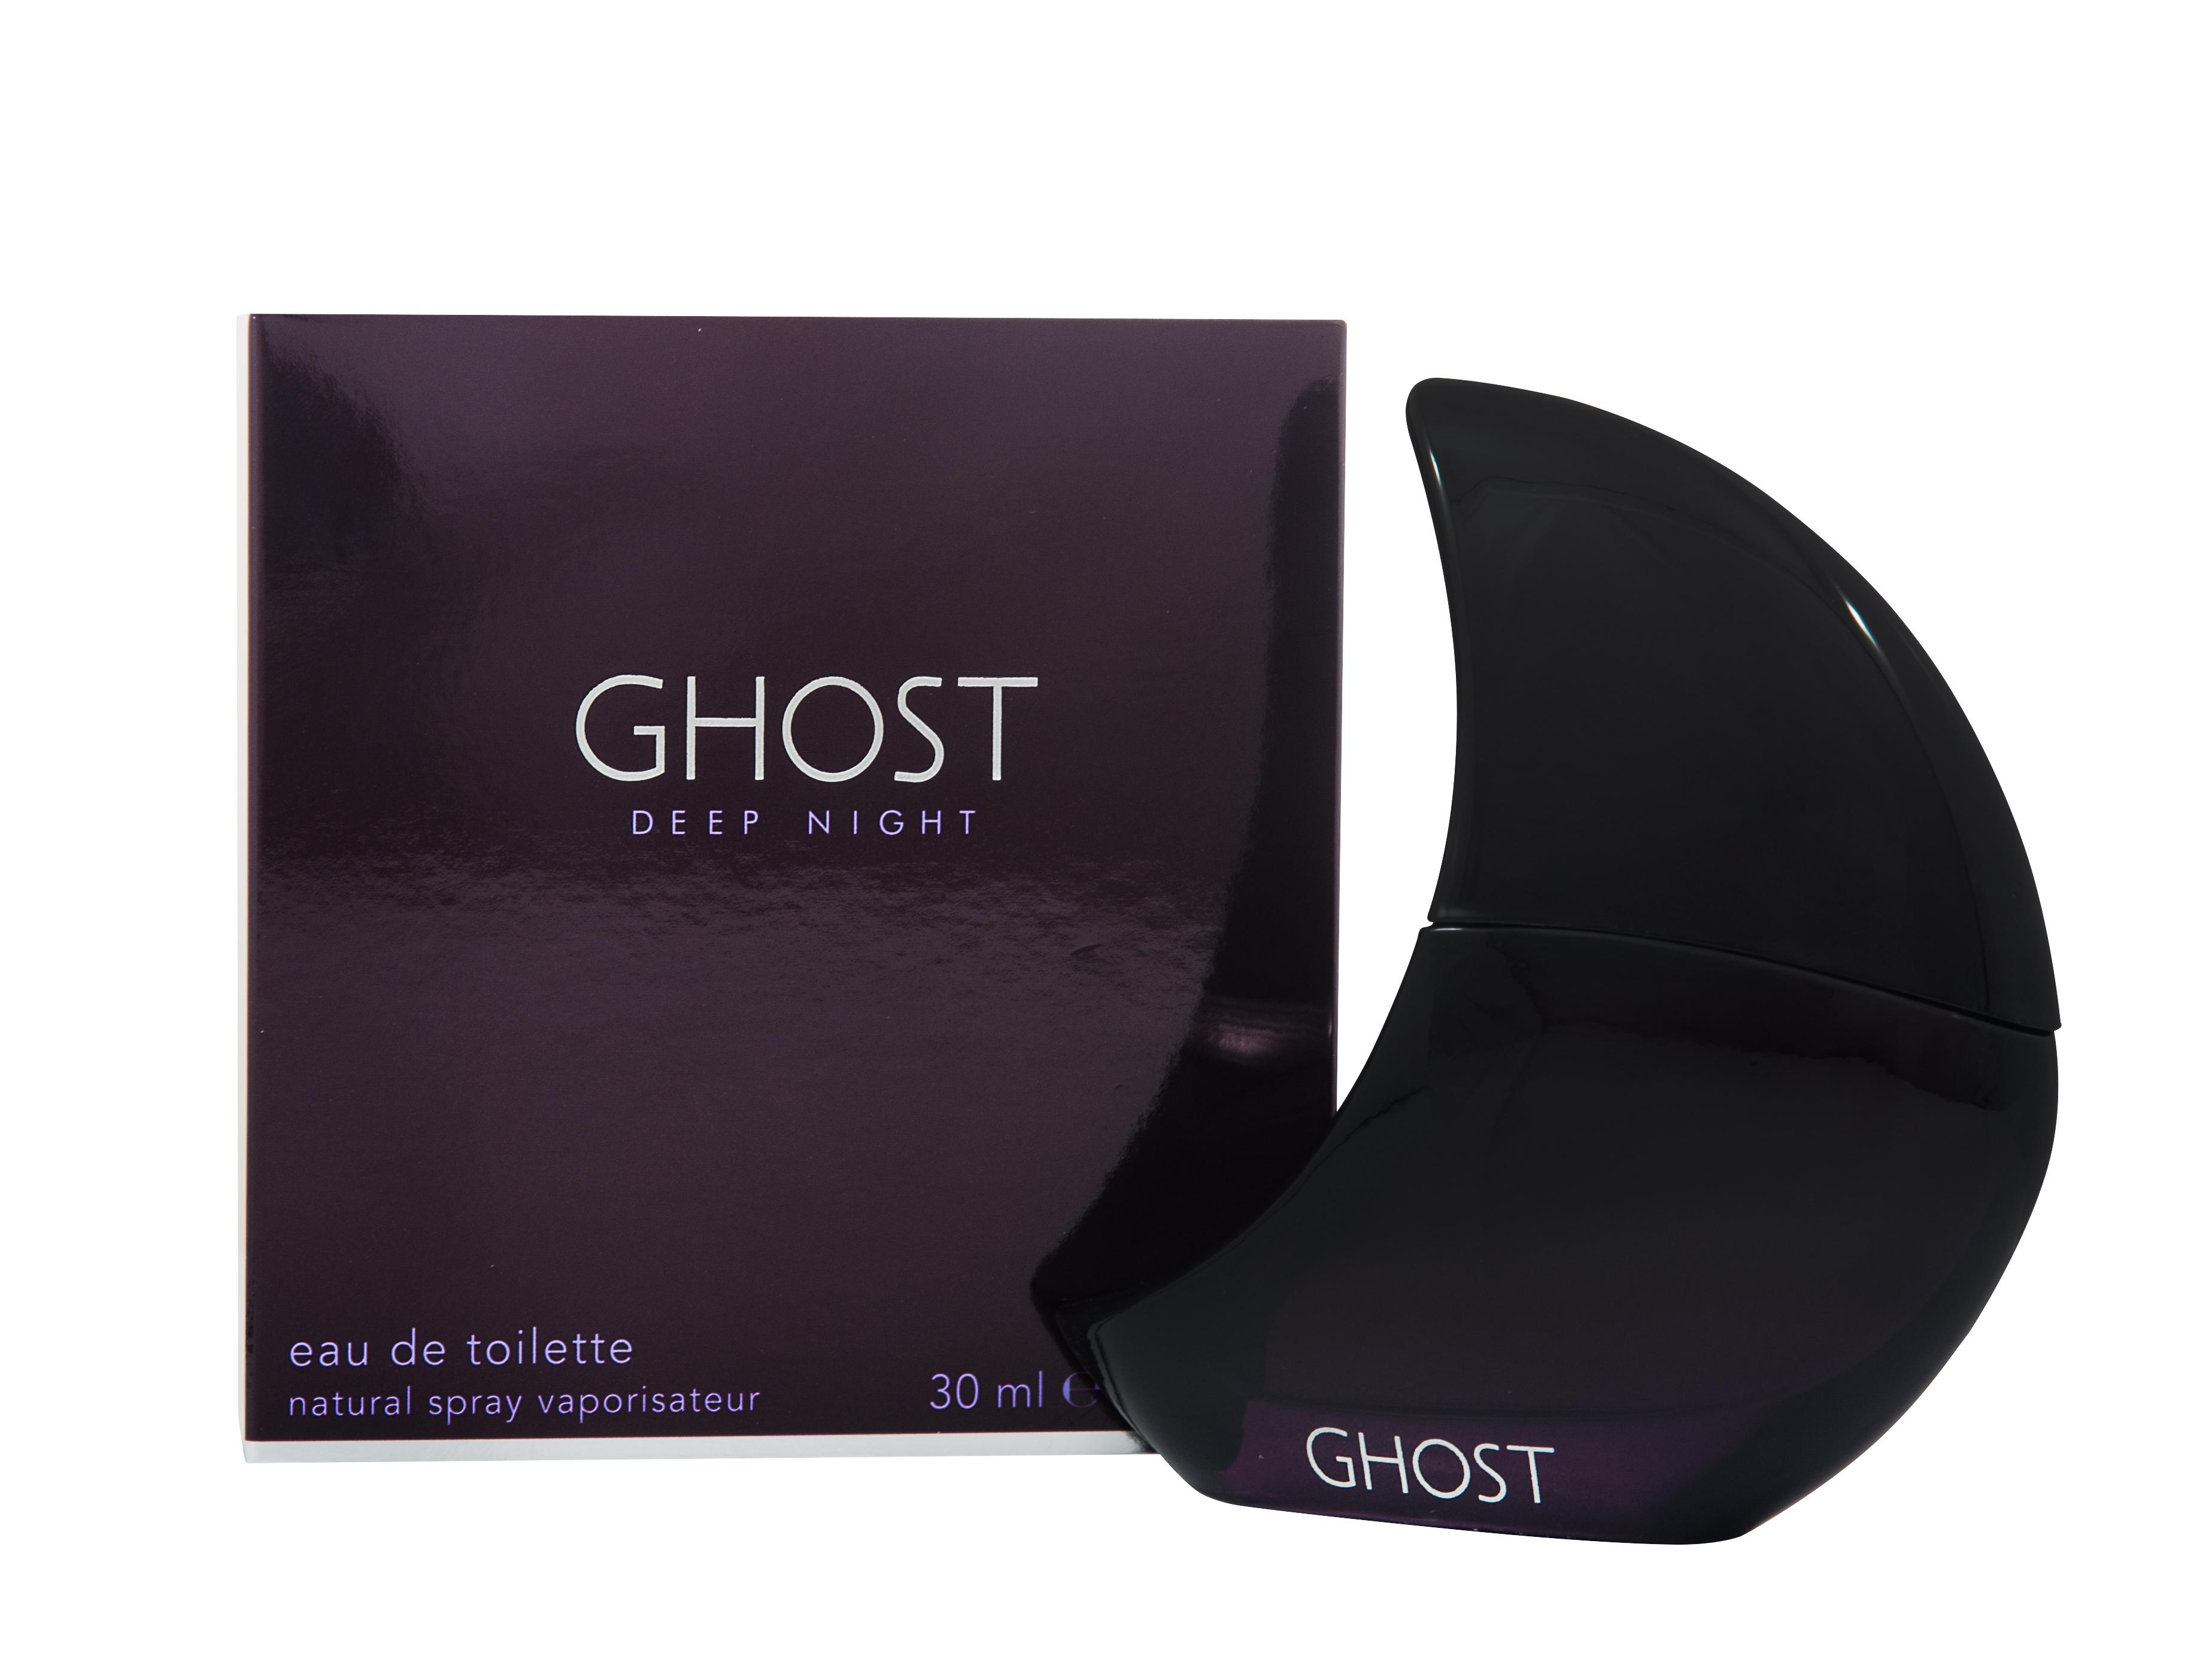 Ghost Deep Night Eau de Toilette 30ml Spray